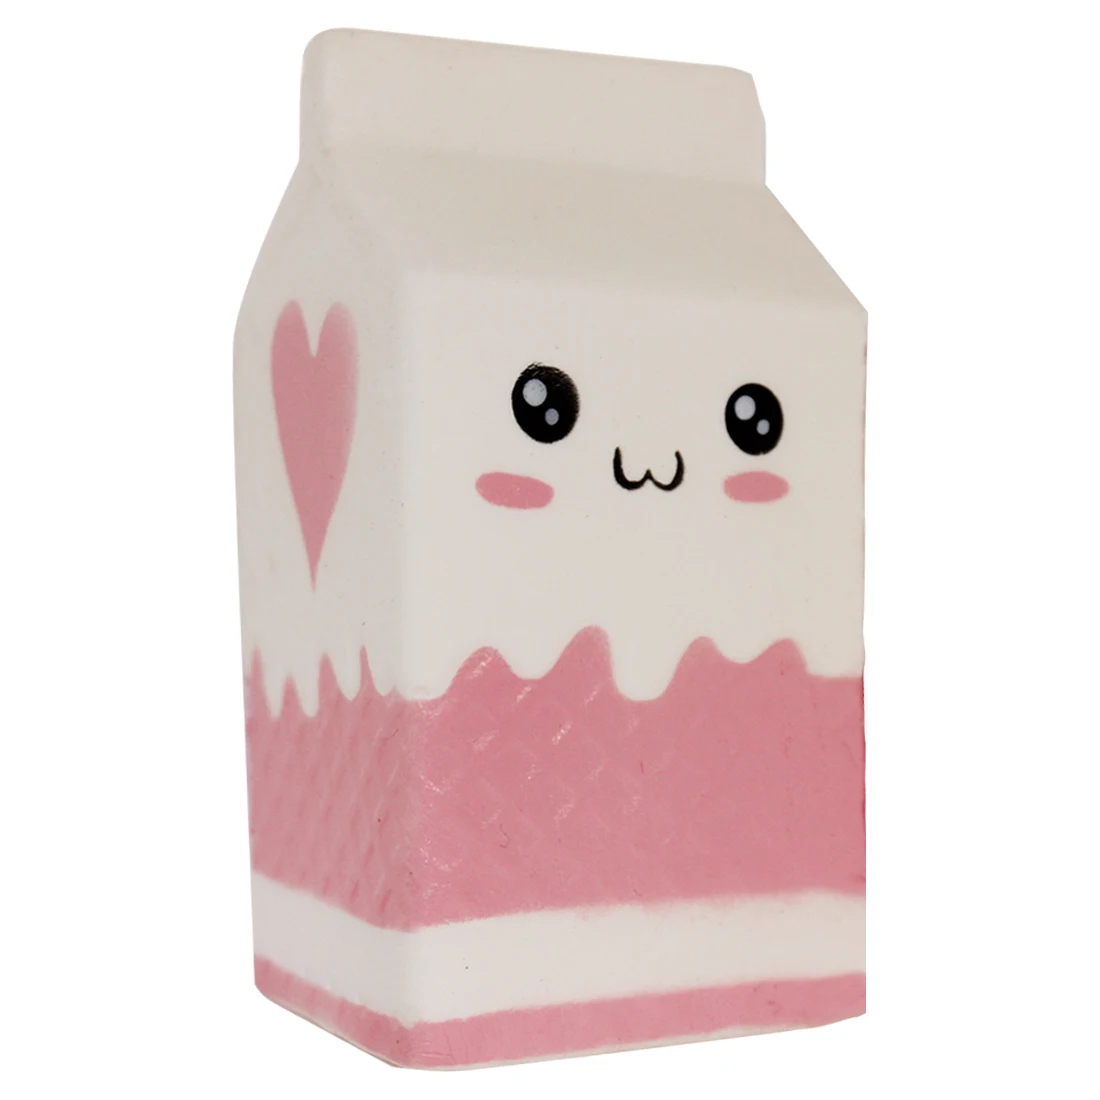 Милые молочный йогурт коробка медленный отскок Jumbo Squishy супер мягкий медленный нарастающее при сжатии игрушка давление рельеф детские